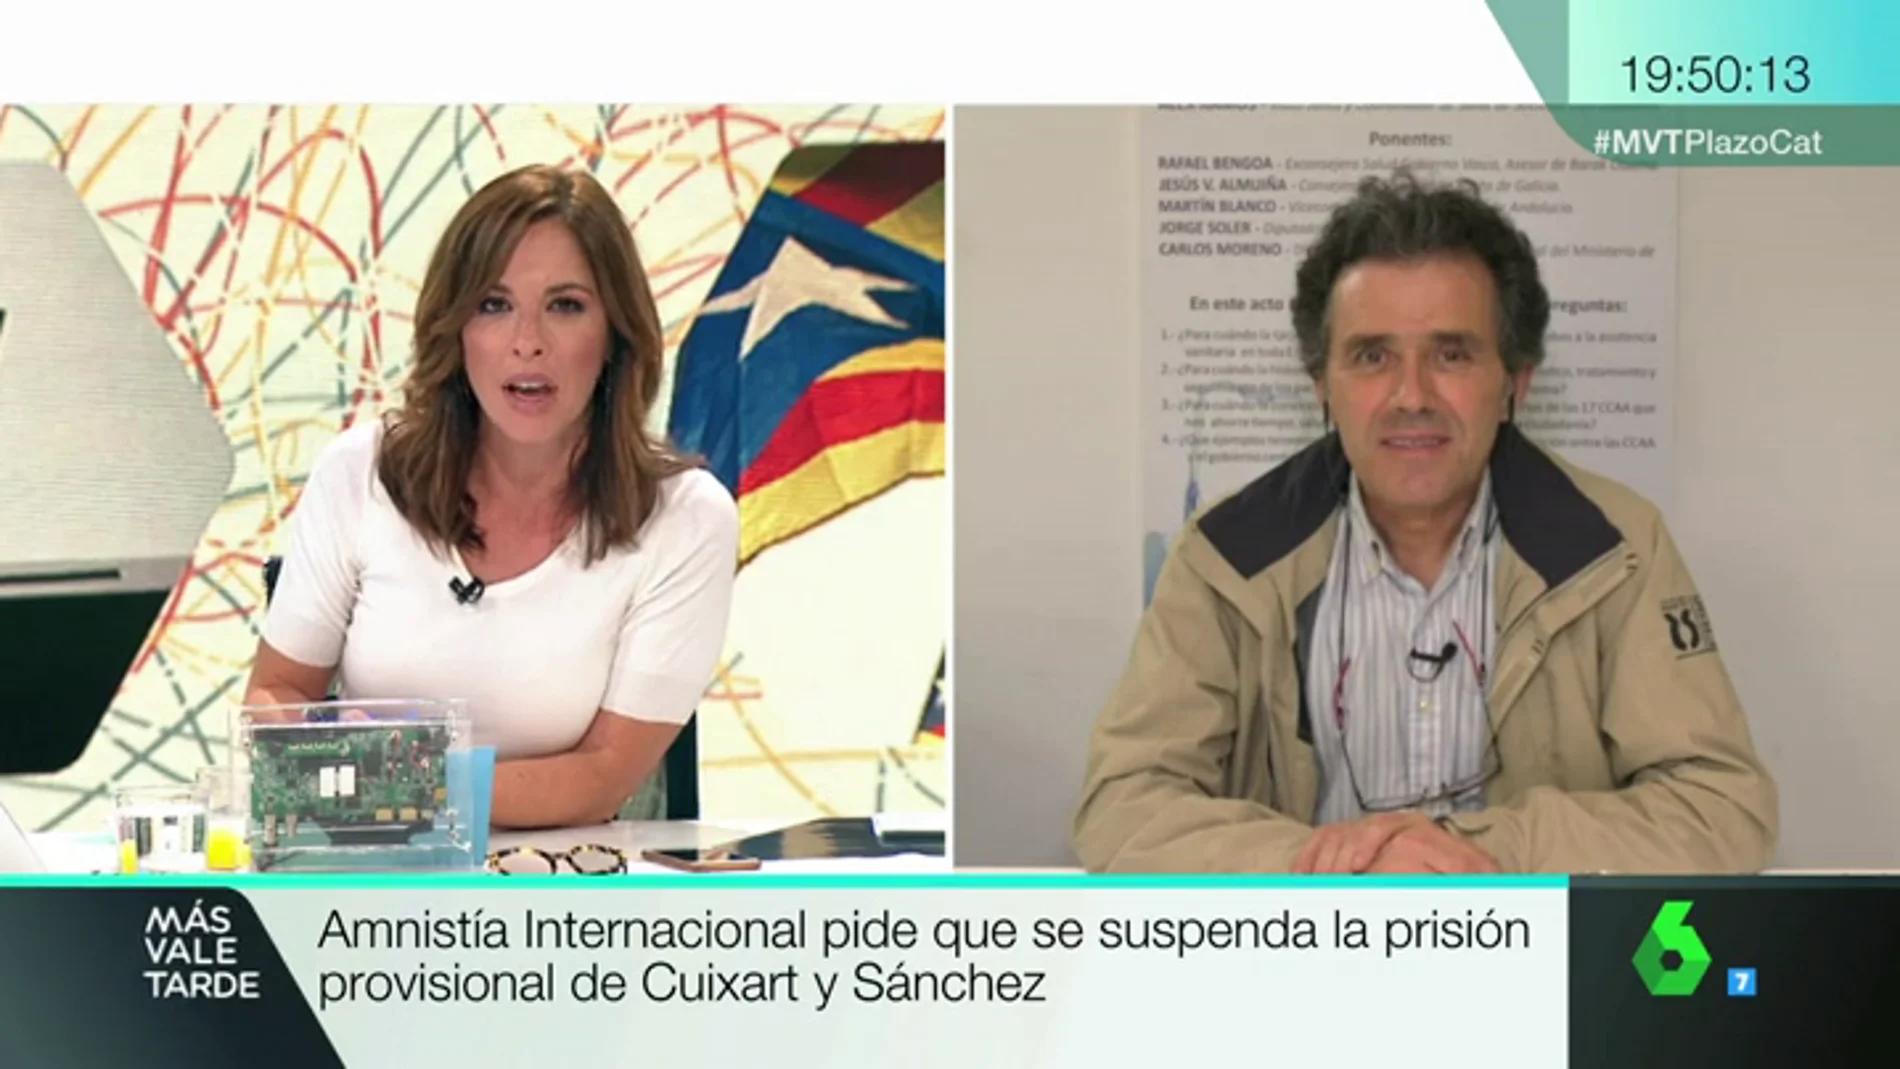 Alex Ramos: "La sociedad catalana ya está fracturada. Ellos la han fracturado"